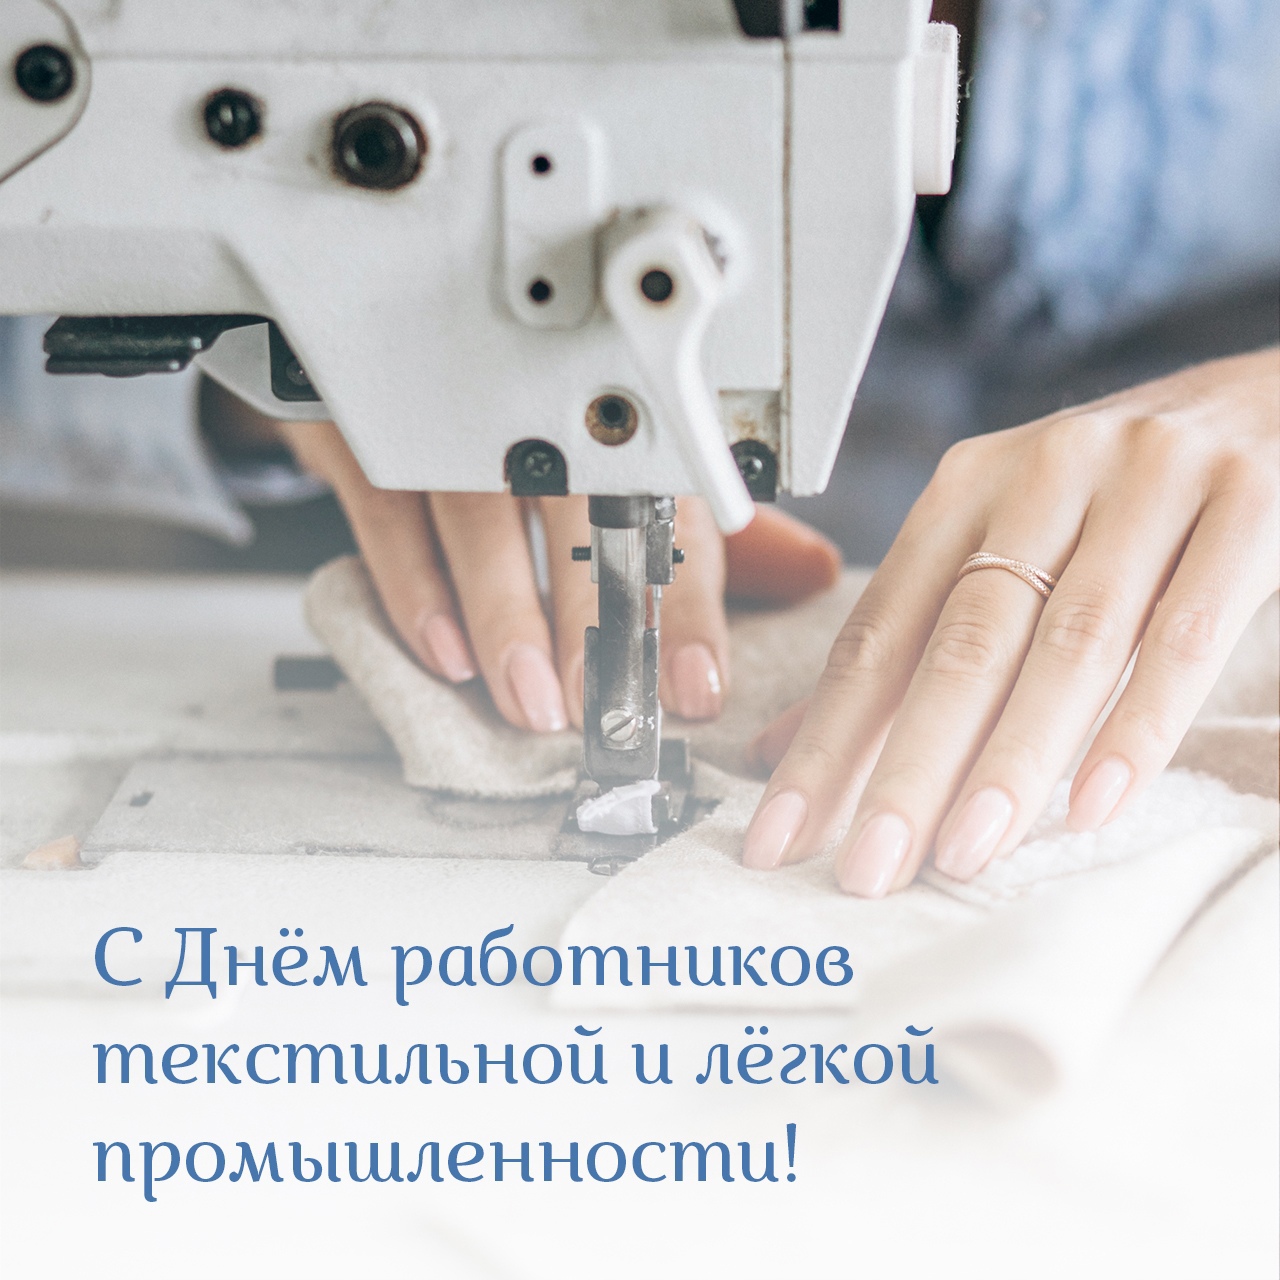 Алексей Островский поздравил работников текстильной и легкой промышленности с профессиональным праздником